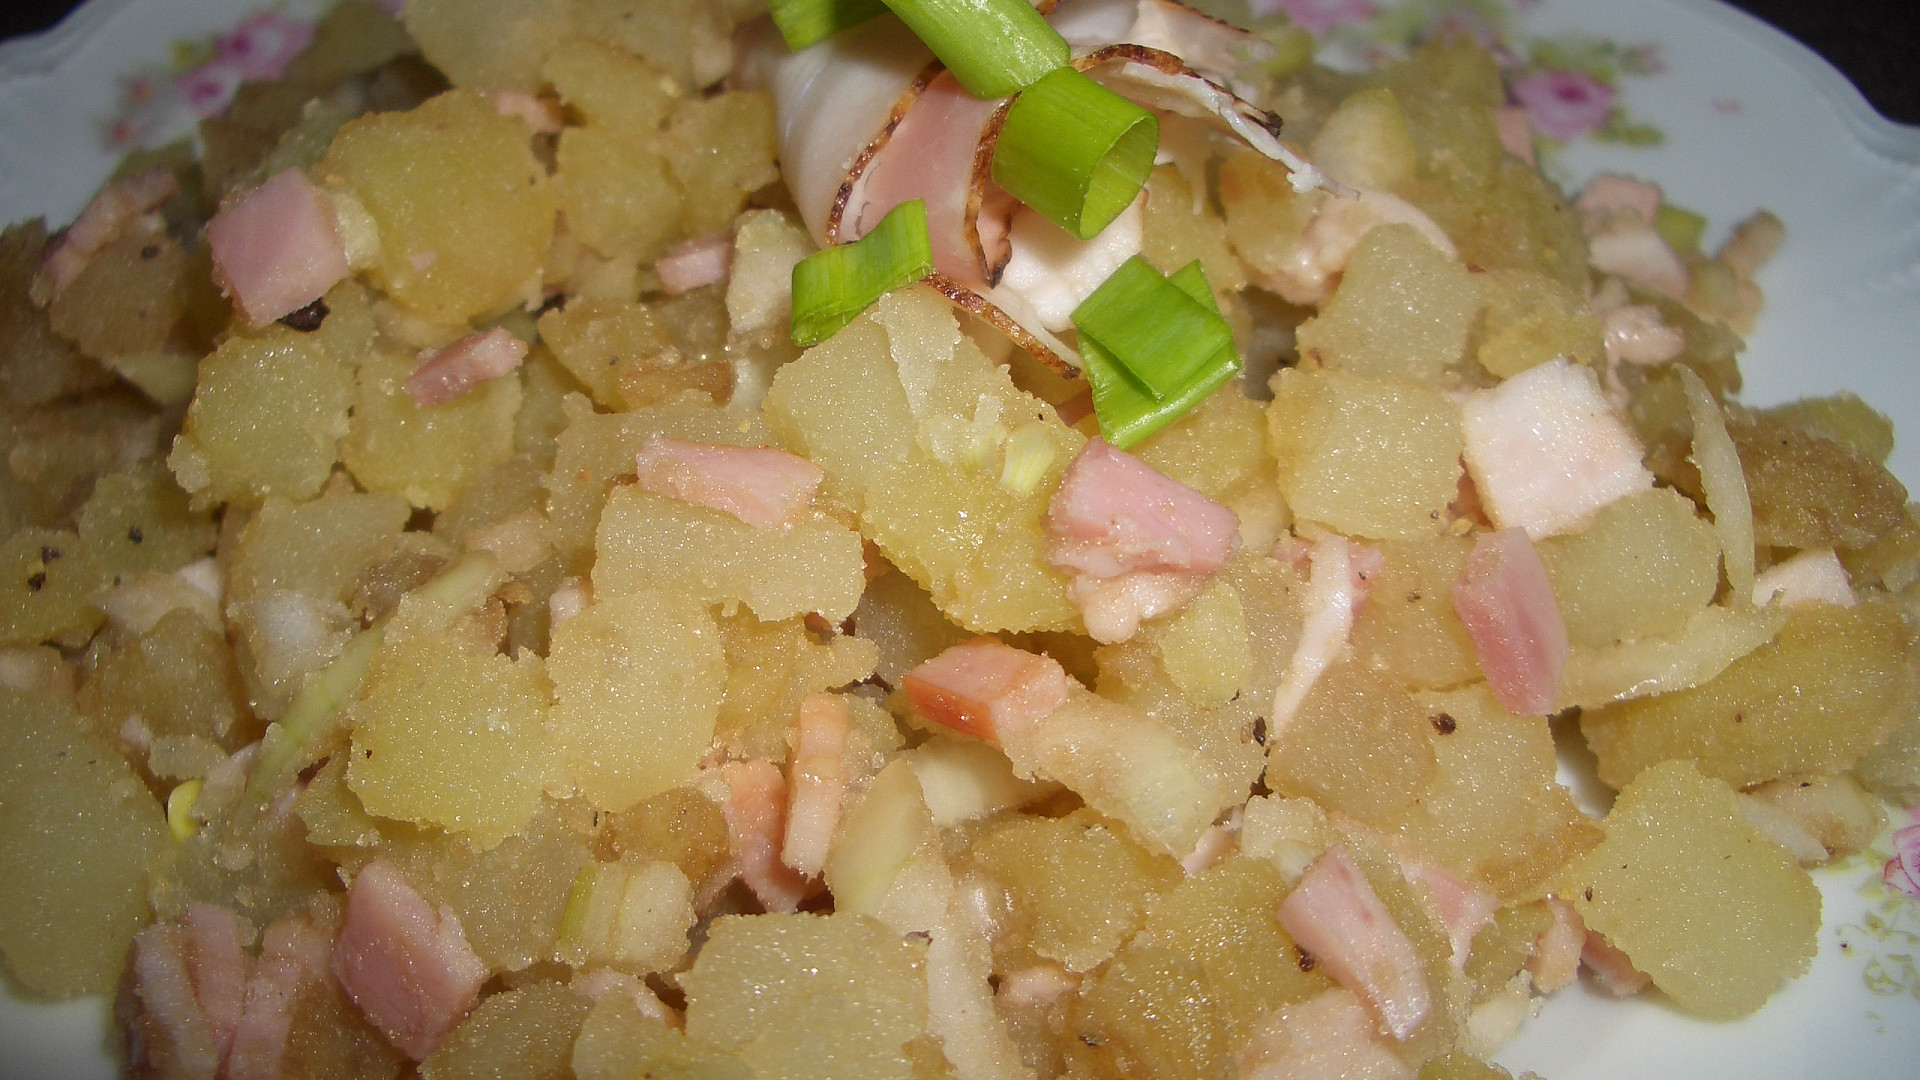 Maďarský bramborový salát